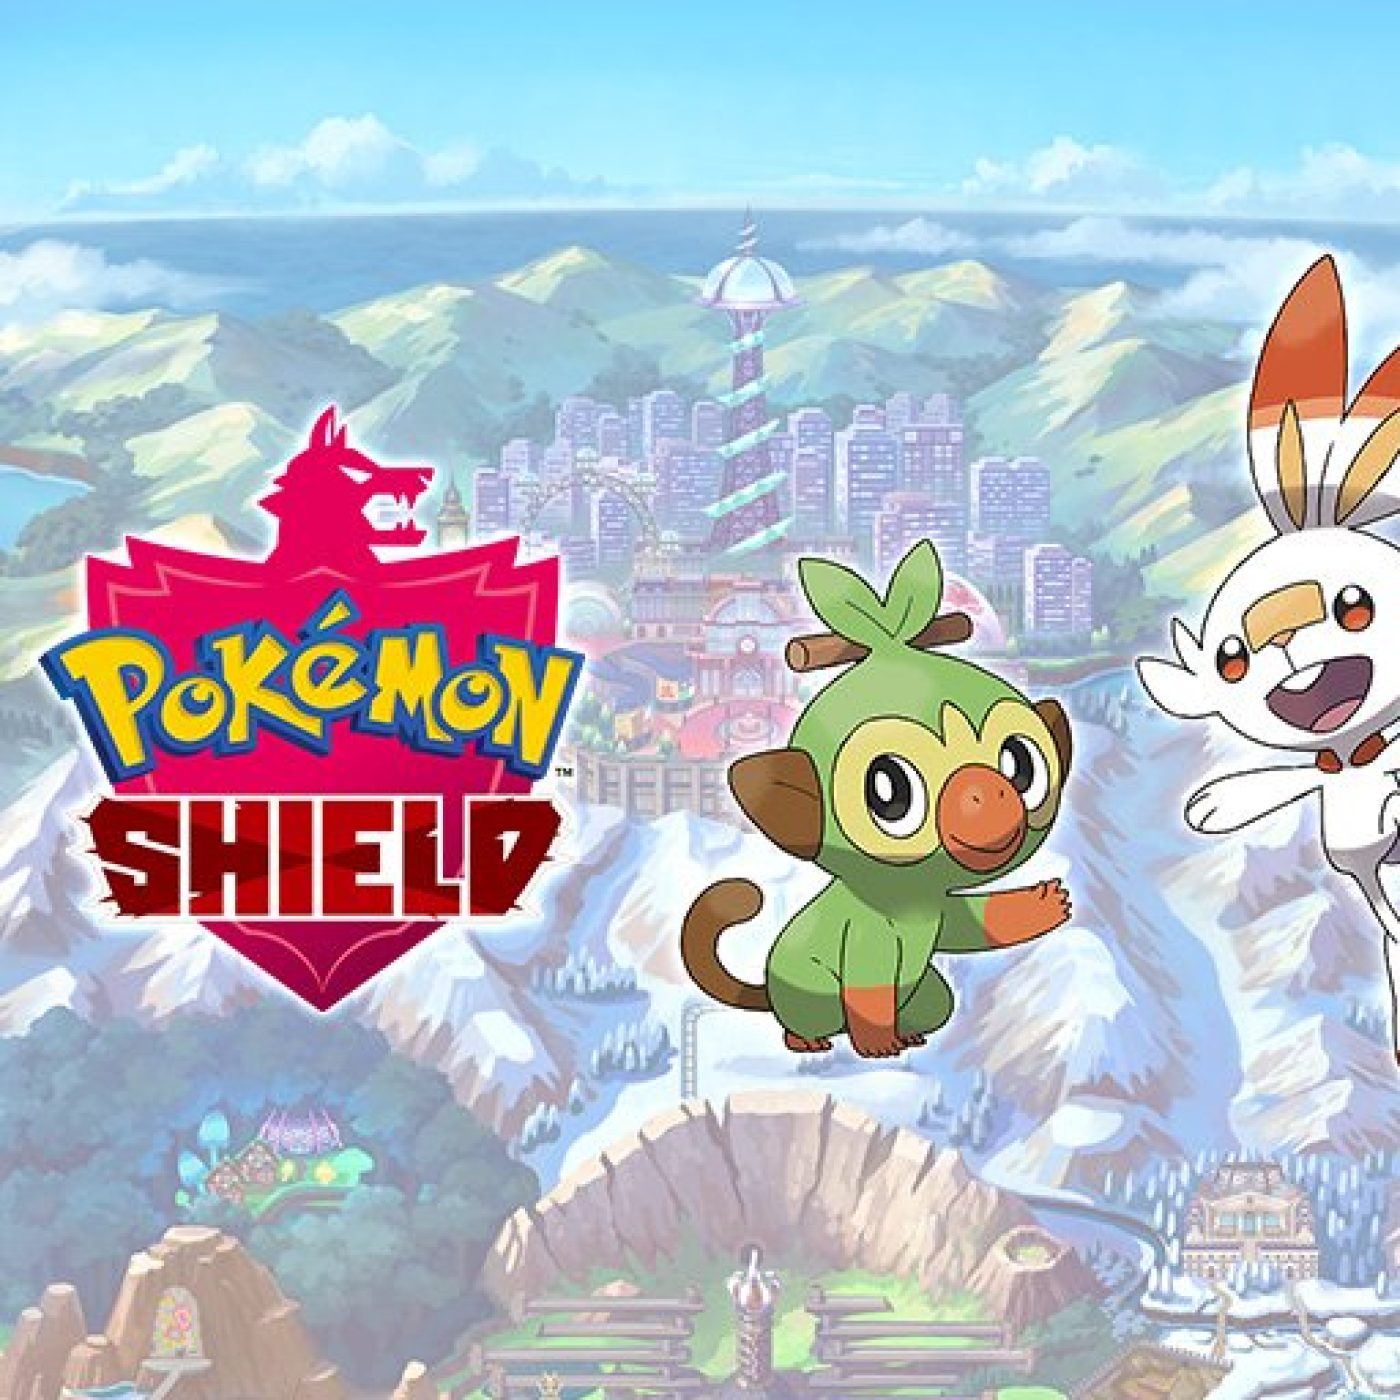 Pokémon Sword and Pokémon Shield news: Latest leak will help you